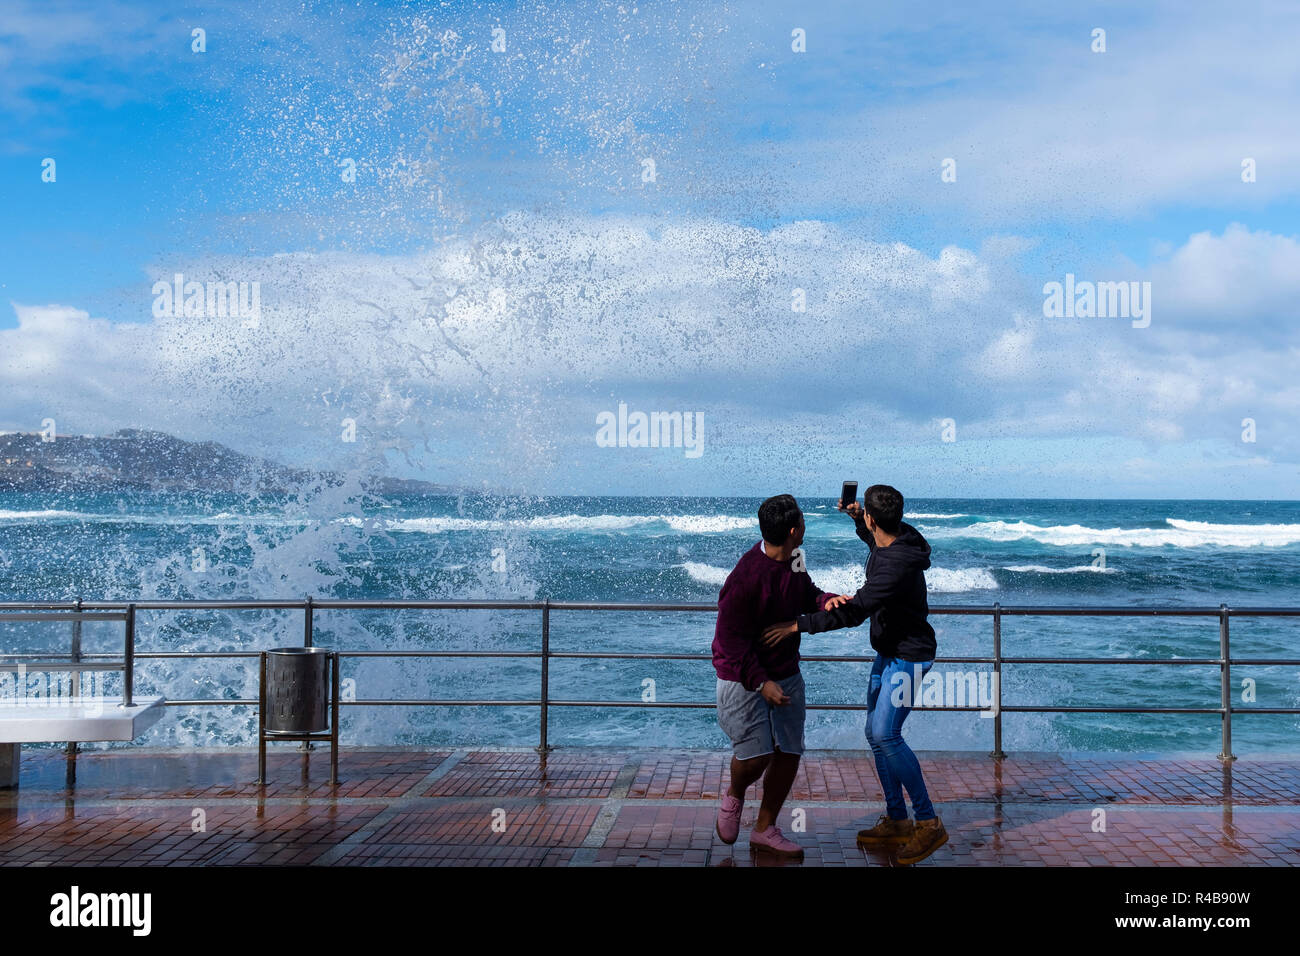 two boys getting wet with wave in playa de las canteras, las palmas de gran canaria, spain Stock Photo